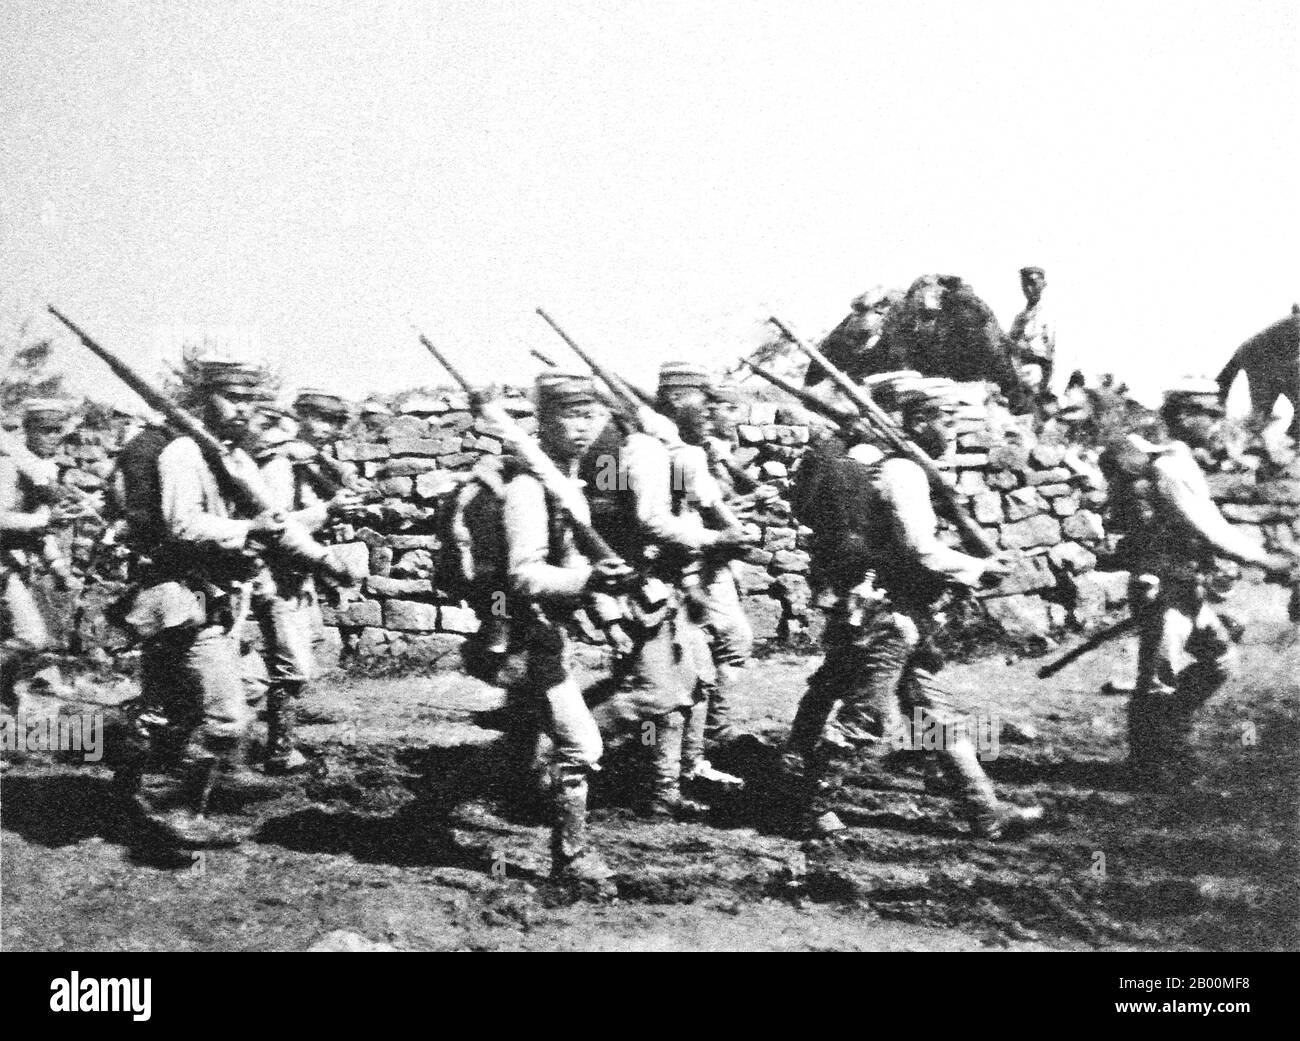 Corée : soldats japonais près de Chemulpo (Inchon) Corée, août-septembre 1904. La guerre russo-japonaise (8 février 1904 – 5 septembre 1905) fut la première grande guerre du XXe siècle qui s'est développée à partir des ambitions impériales rivales de l'Empire russe et de l'Empire japonais sur la Mandchourie et la Corée. Les campagnes qui en ont résulté, dans lesquelles l'armée japonaise a remporté la victoire sur les forces russes qui les ont harhi, étaient inattendues. Banque D'Images